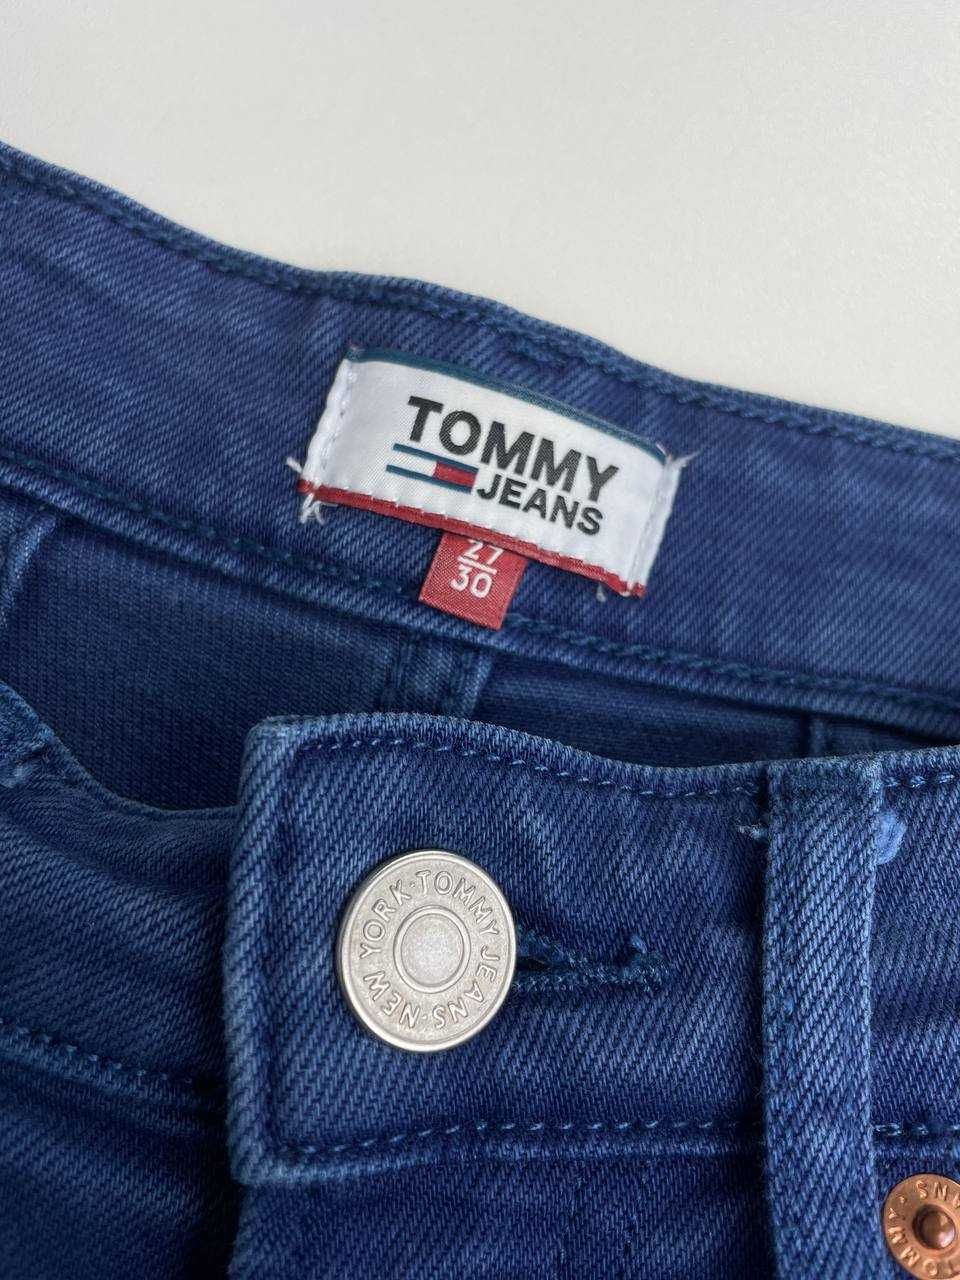 27С Жіночі джинси Tommy Hilfiger мом high rise tapered джинсы оригинал